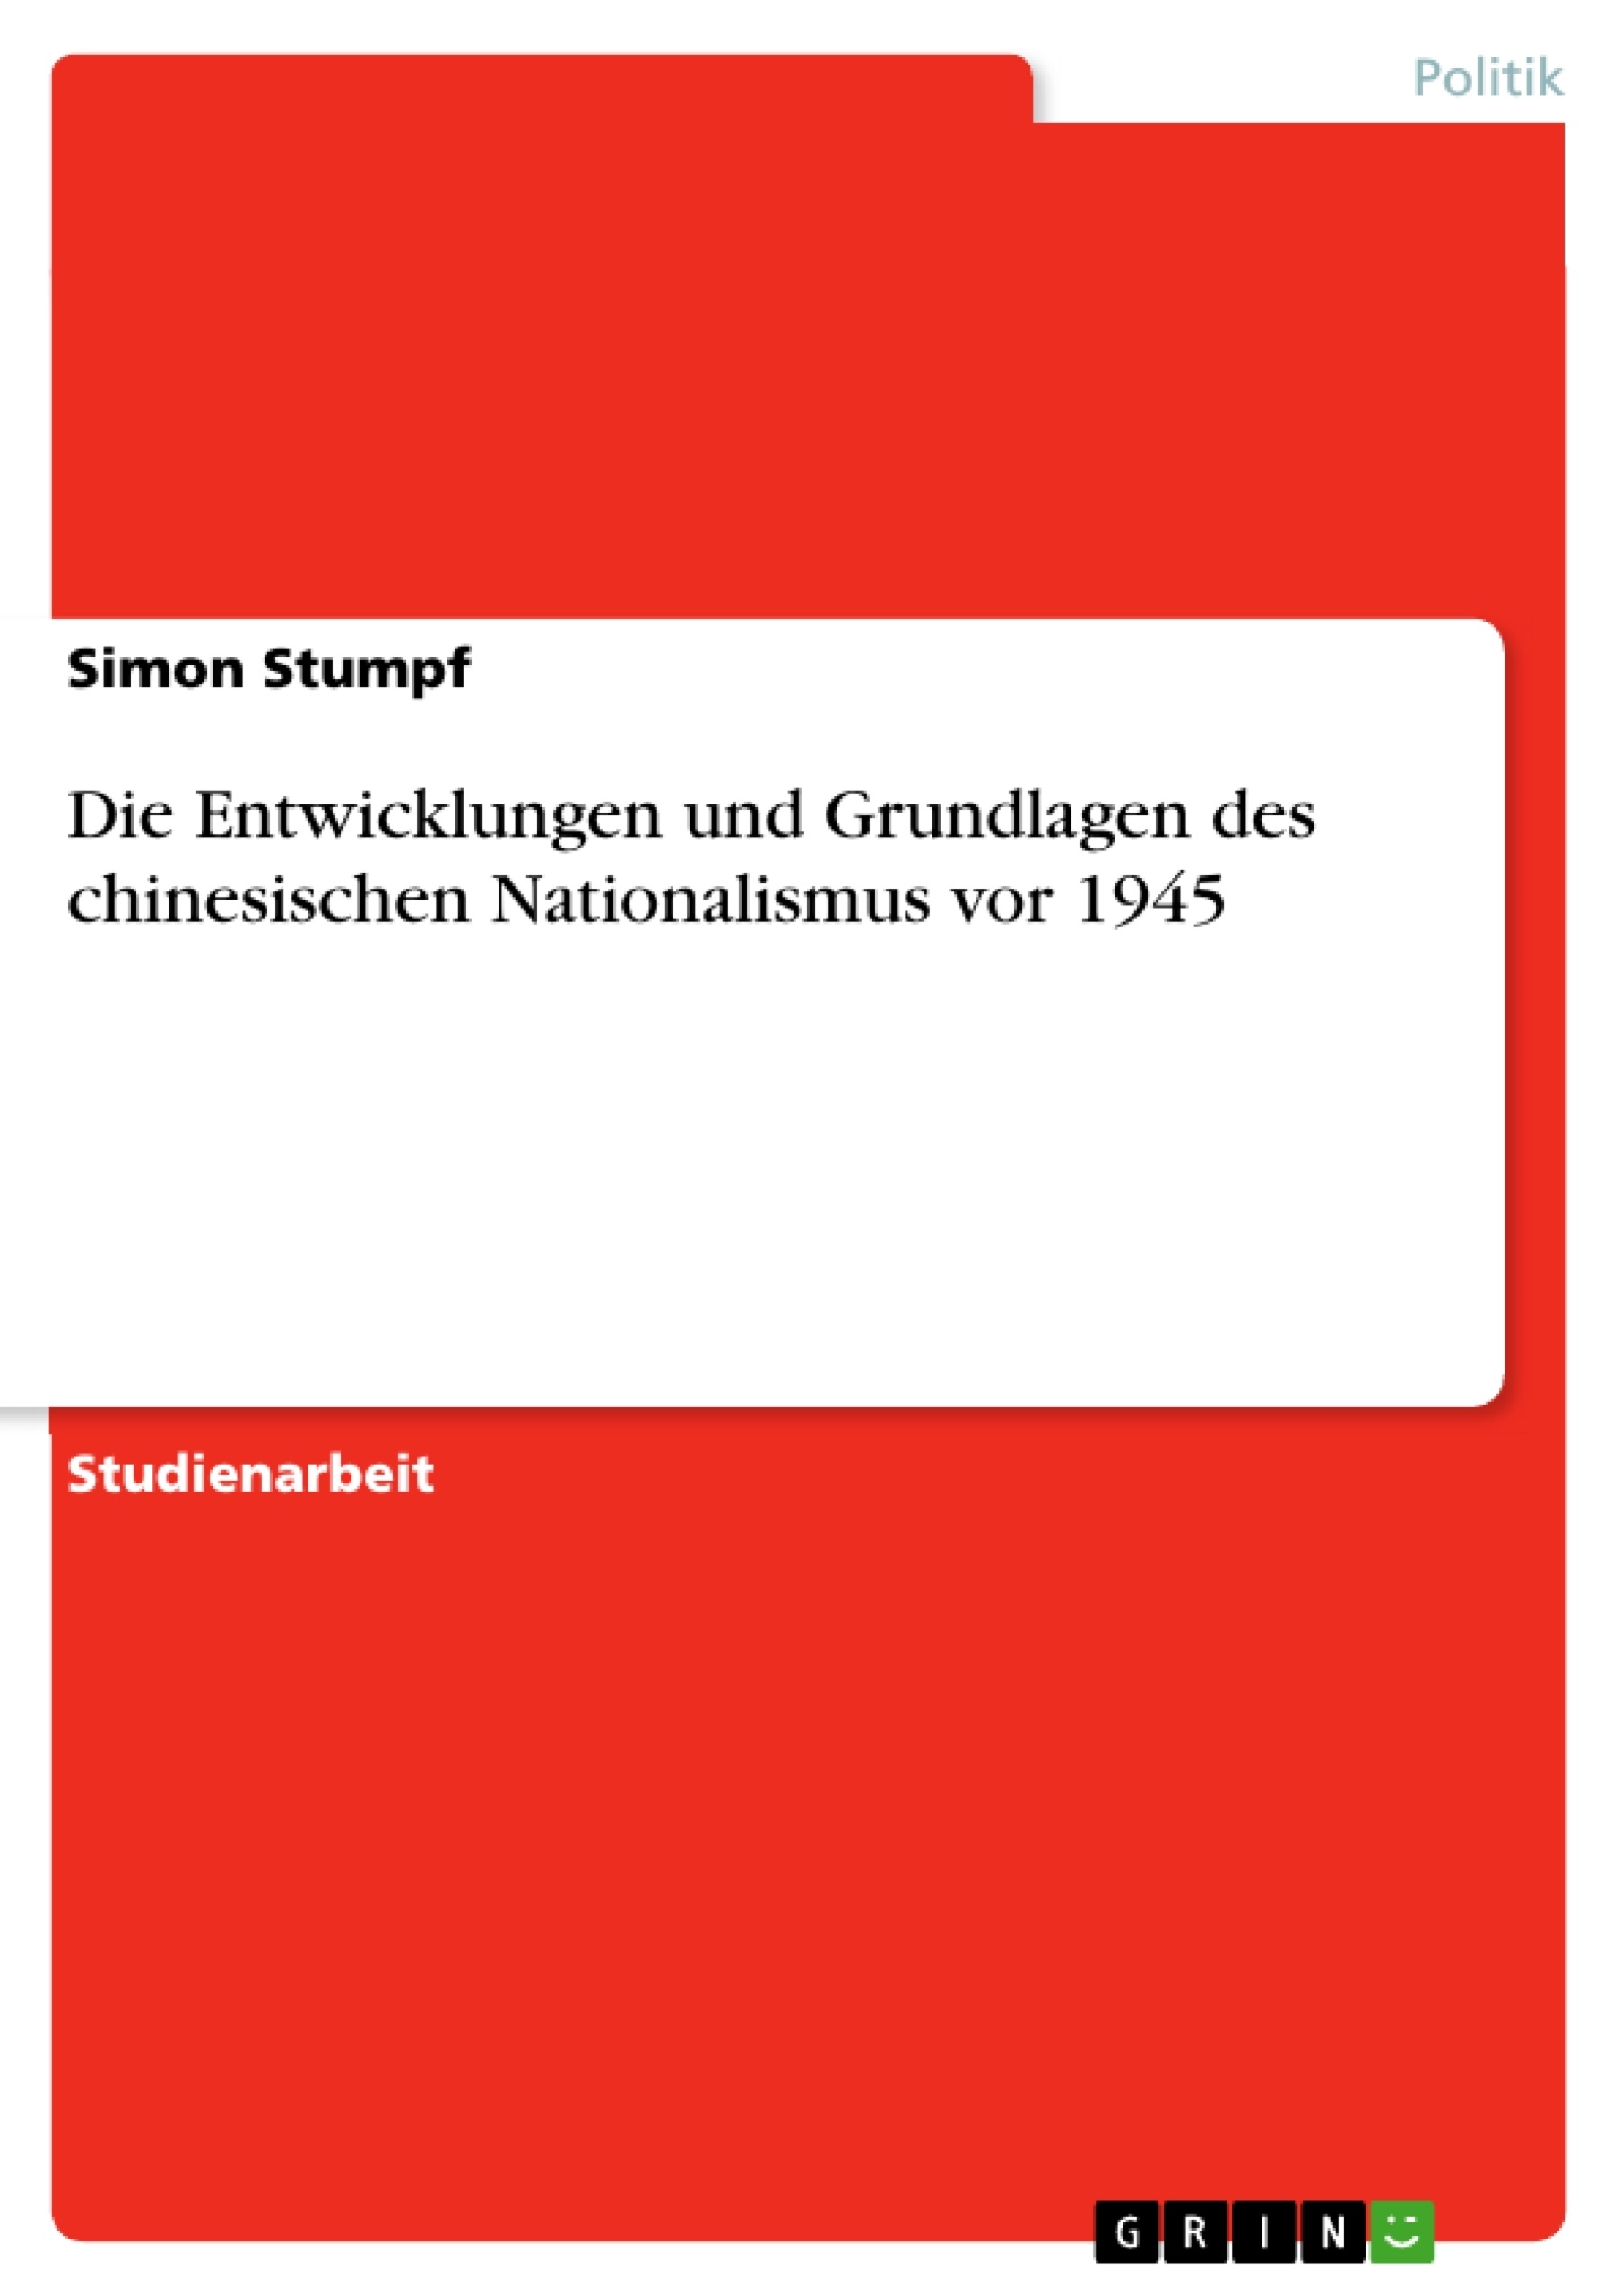 Title: Die Entwicklungen und Grundlagen des chinesischen Nationalismus vor 1945